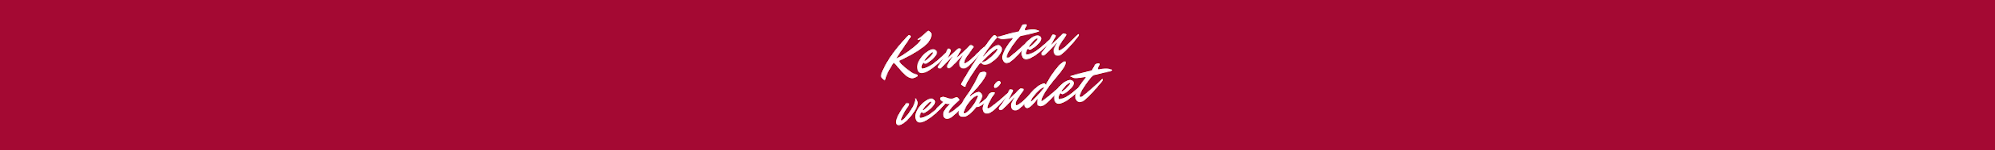 kempten_verbindet_logo_schmal